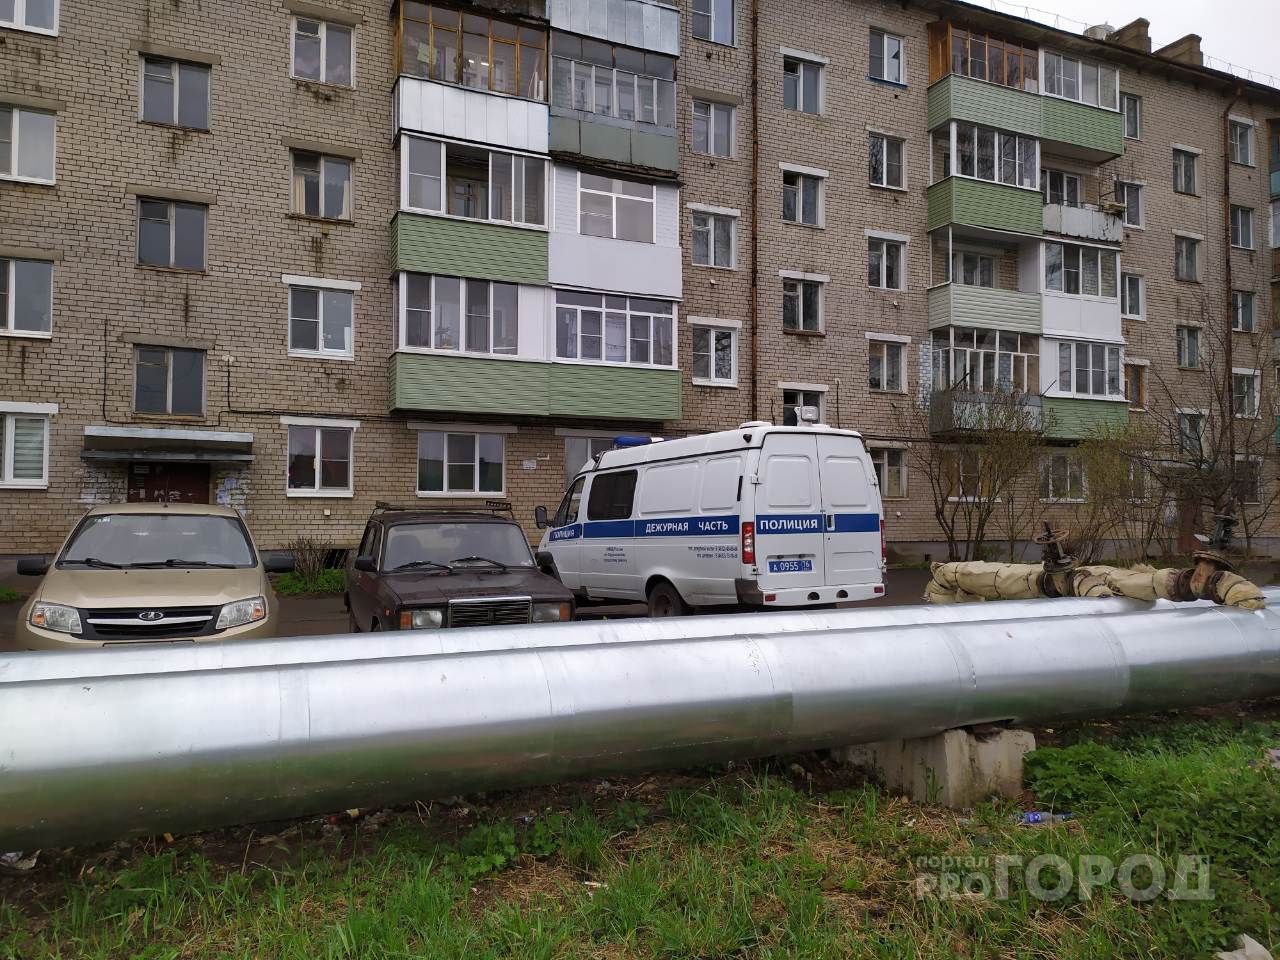 Извращались как могли: двое посетителей изнасиловали официантку в Ярославле